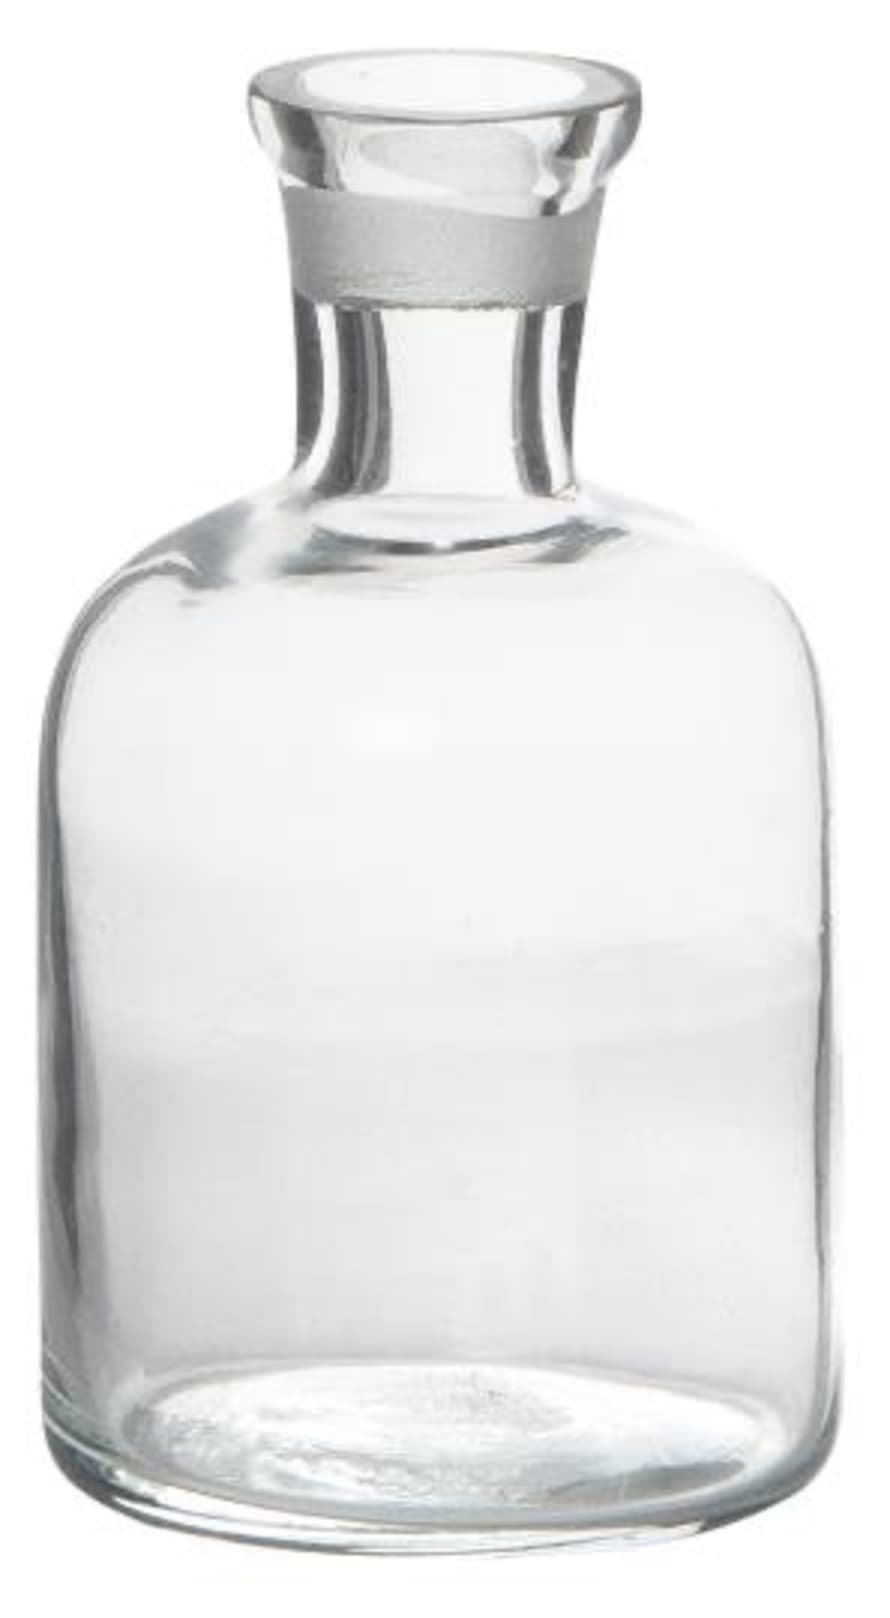 Ib Laursen Small Pharmacy Glass Bottle